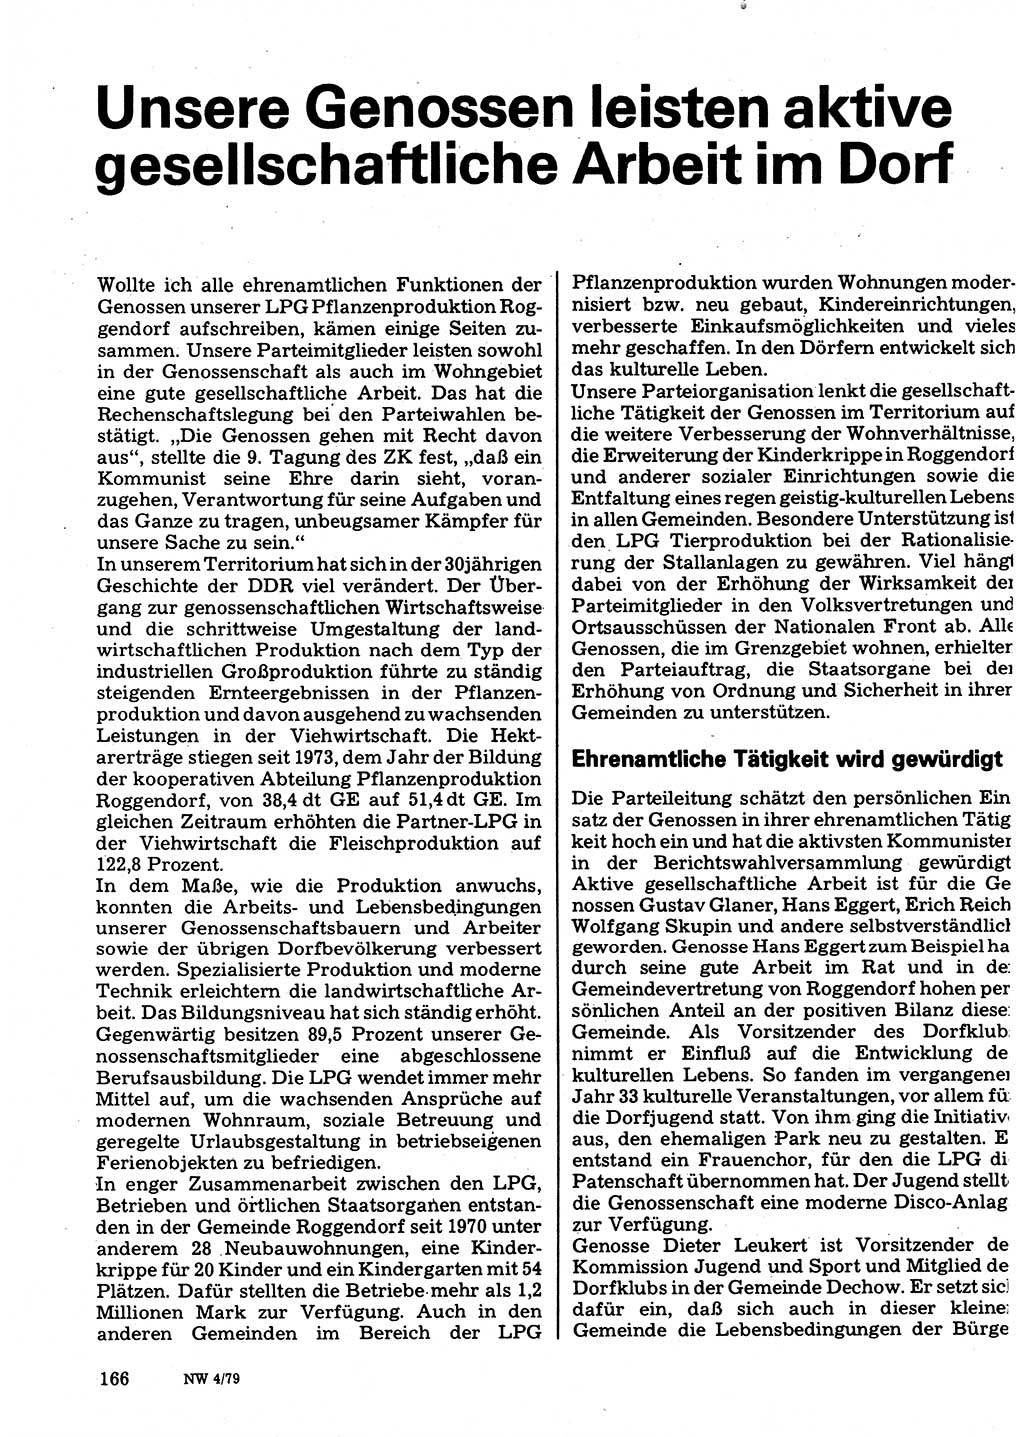 Neuer Weg (NW), Organ des Zentralkomitees (ZK) der SED (Sozialistische Einheitspartei Deutschlands) für Fragen des Parteilebens, 34. Jahrgang [Deutsche Demokratische Republik (DDR)] 1979, Seite 166 (NW ZK SED DDR 1979, S. 166)